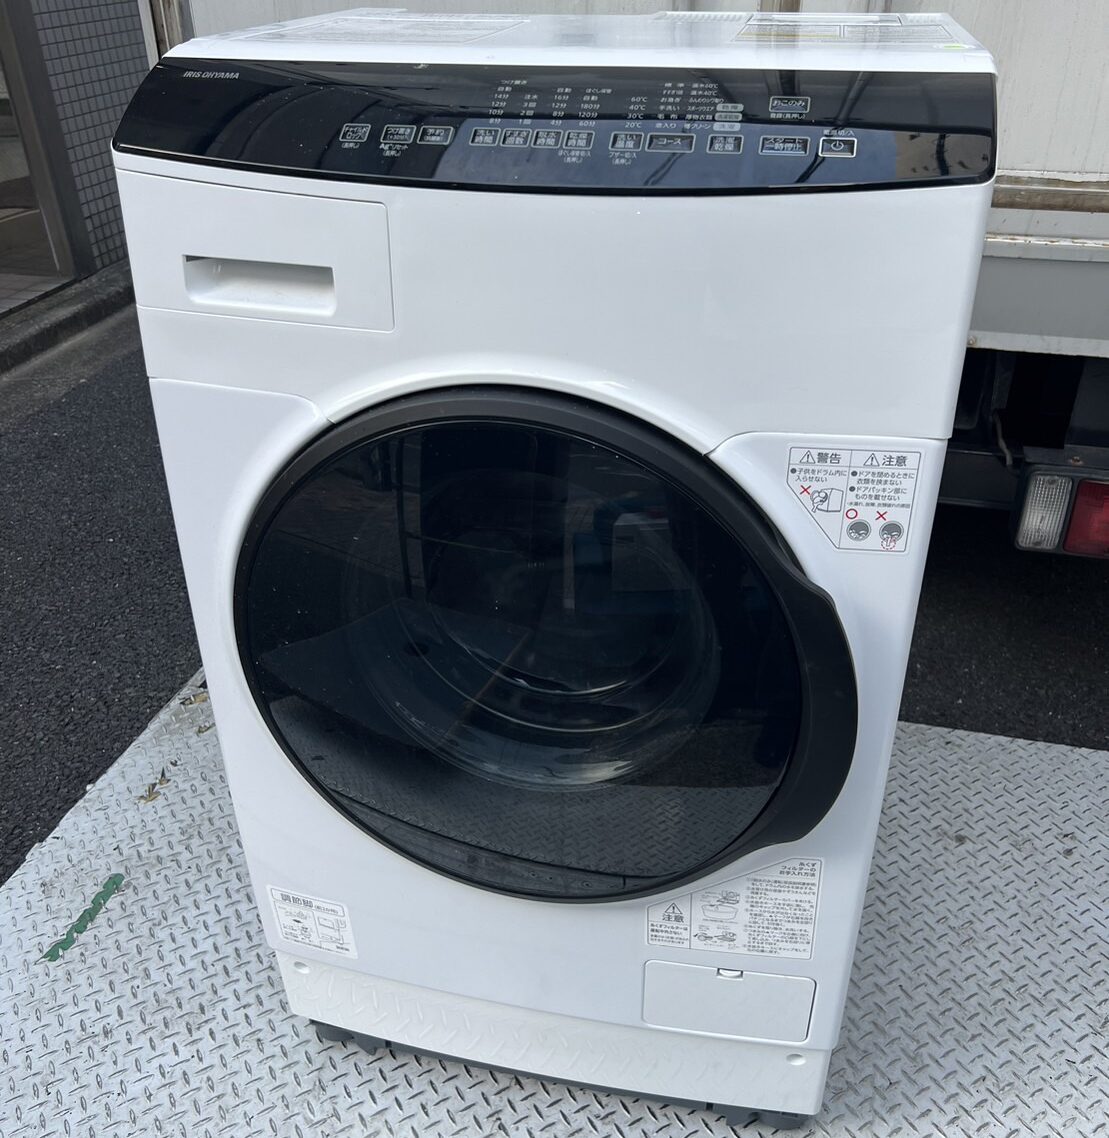 ドラム式洗濯機 IRIS OHYAMA HDK832A買取、出張買取